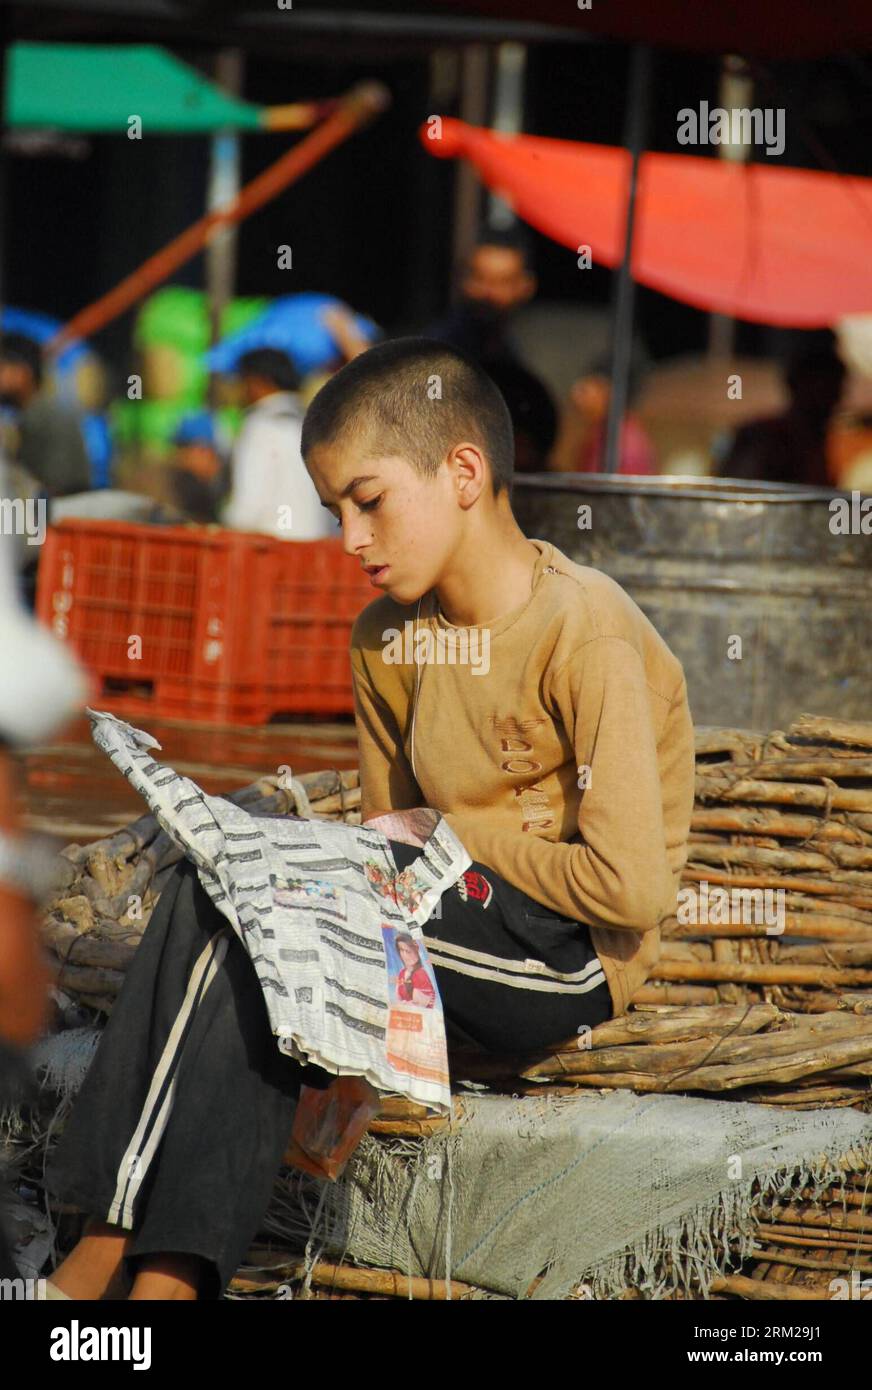 Bildnummer : 59747730 Datum : 01.06.2013 Copyright : imago/Xinhua (130601) -- ISLAMABAD, 1 juin 2013 (Xinhua) -- Un garçon pakistanais lit un journal devant sa maison de fortune à l'occasion de la Journée internationale de l'enfance dans la banlieue d'Islamabad, capitale du Pakistan, le 1 juin 2013. La Journée internationale de l enfance a été célébrée samedi dans le pays, avec des organisations non gouvernementales et des écoles promouvant la fraternité internationale et l harmonie entre les enfants de différents milieux, ainsi que l égalité des droits pour chaque enfant. (Xinhua/Saadia Seher) PAKISTAN-ISLAMABAD-CHILDREN S DAY PUBLICATIONxNOTxINxC Banque D'Images